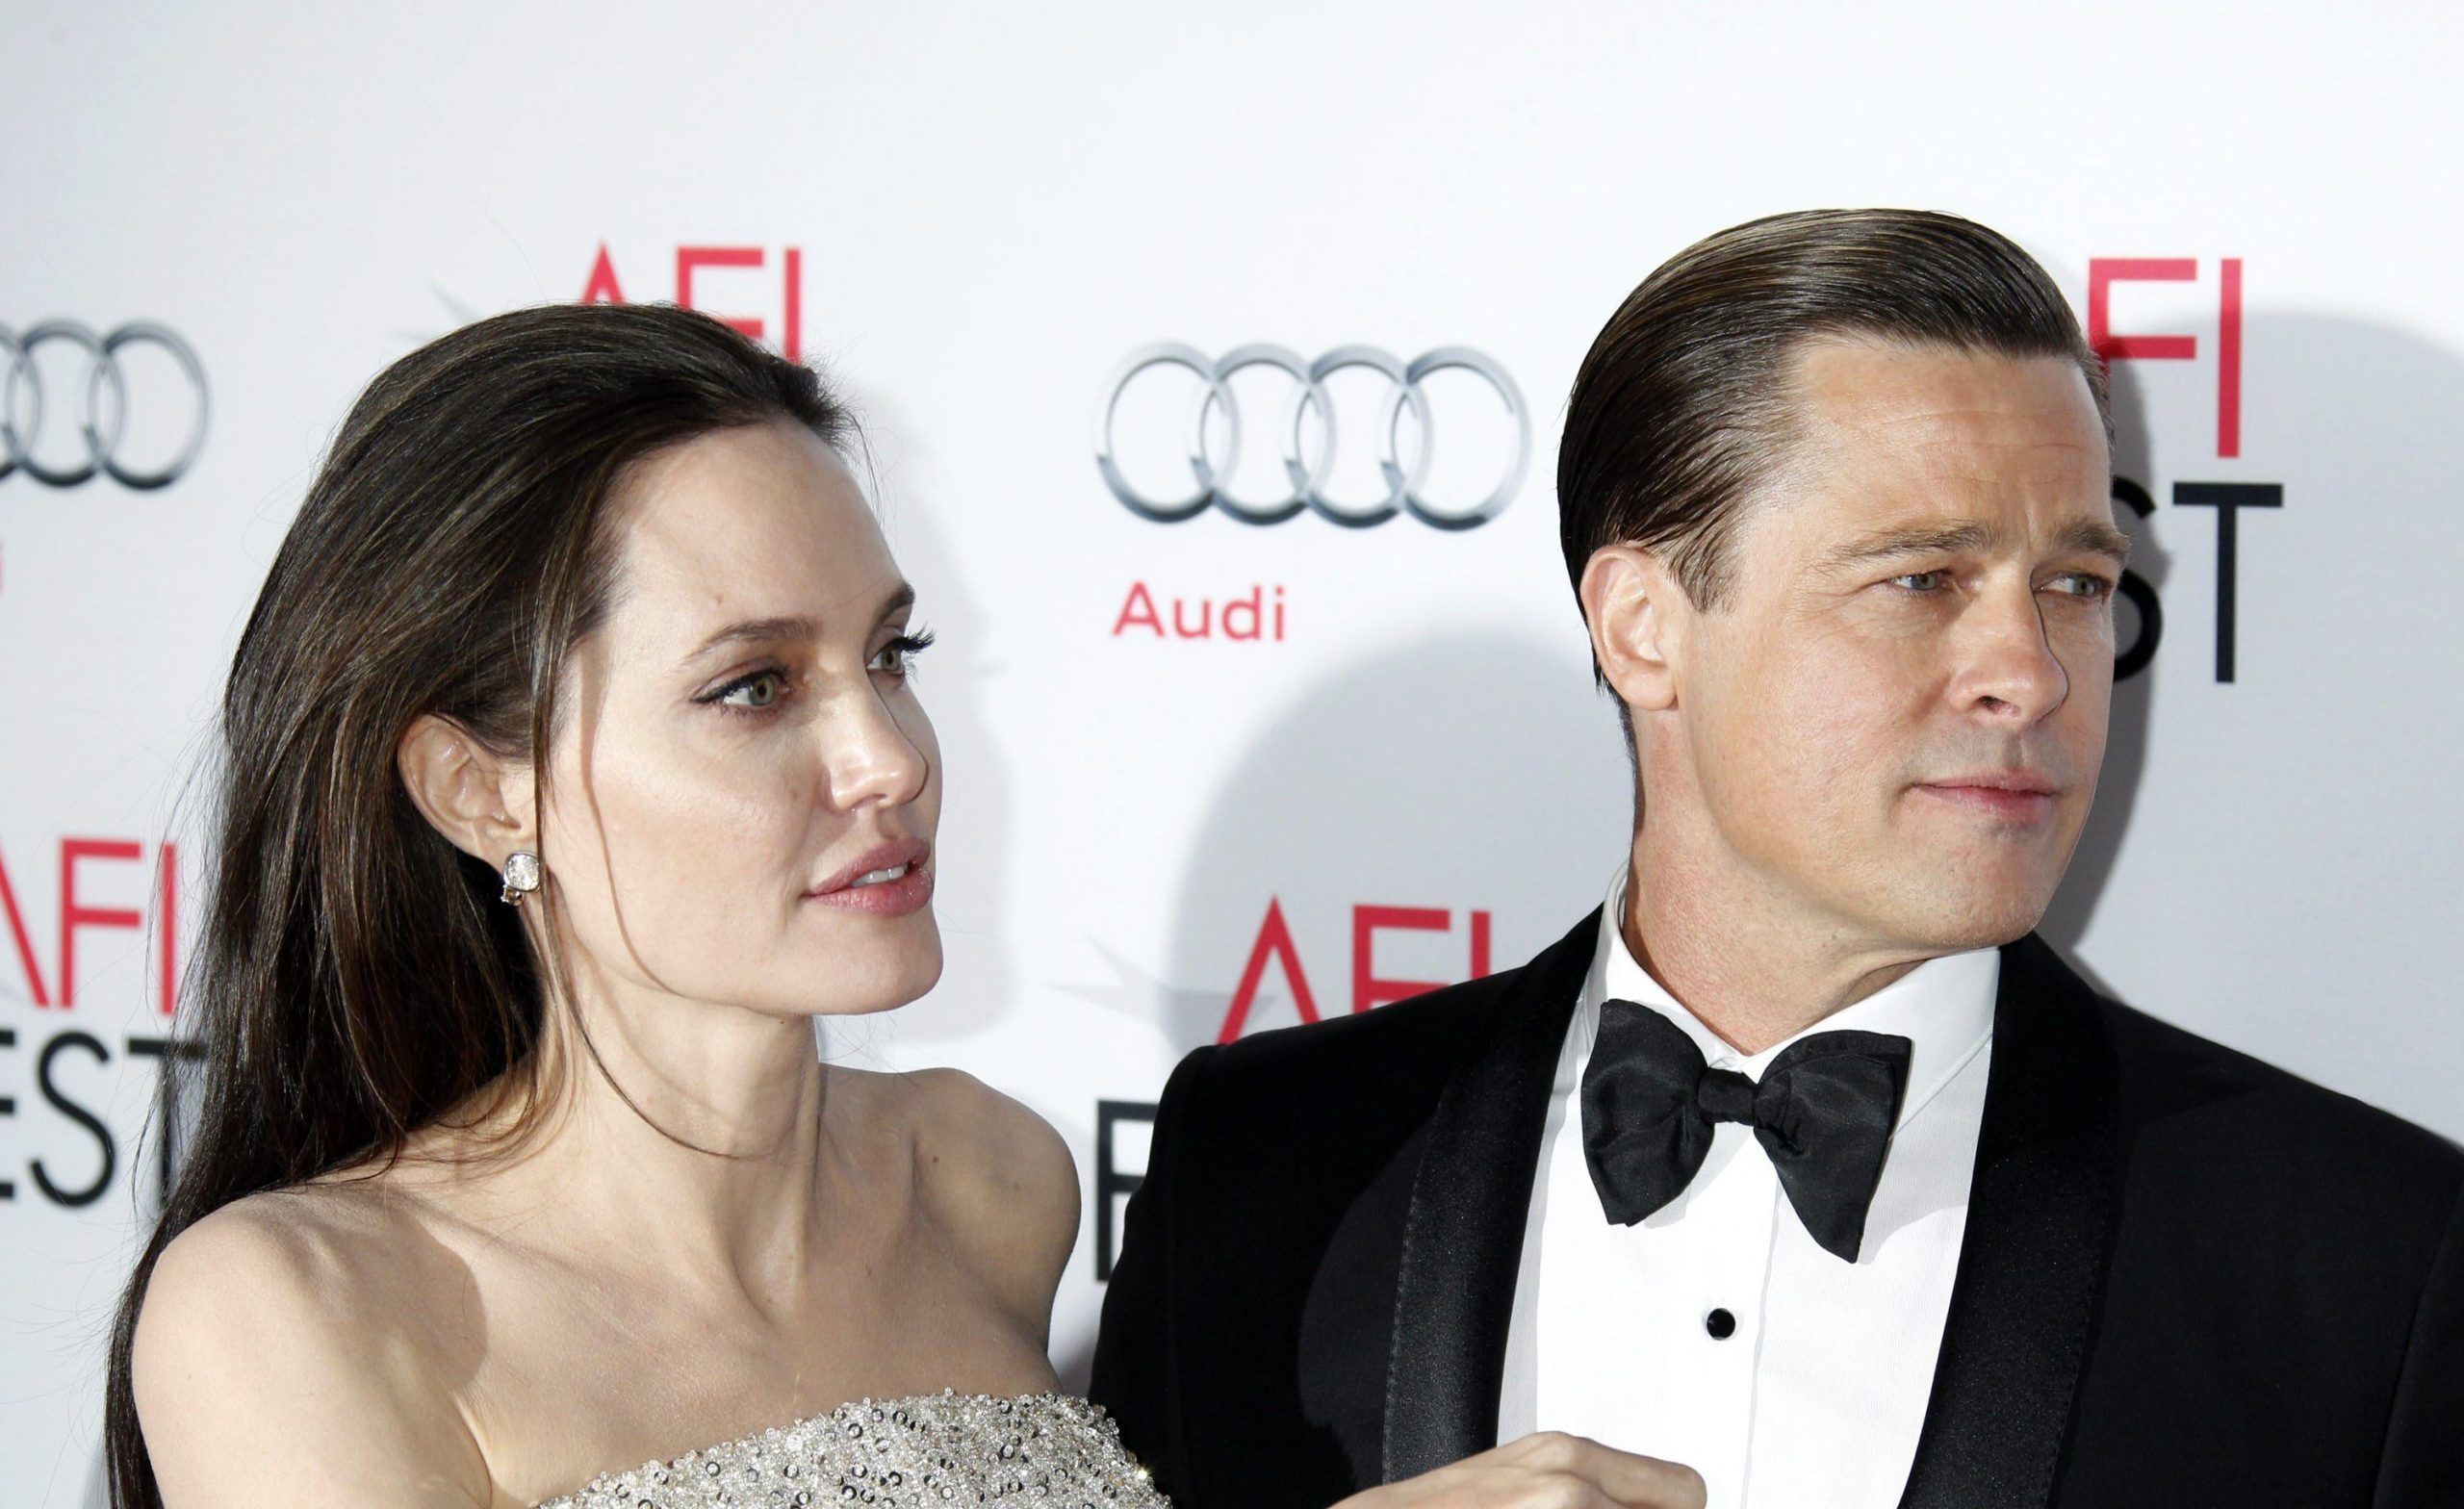 Angelina Jolie perdona Brad Pitt? ‘Solo se ha imparato la lezione’